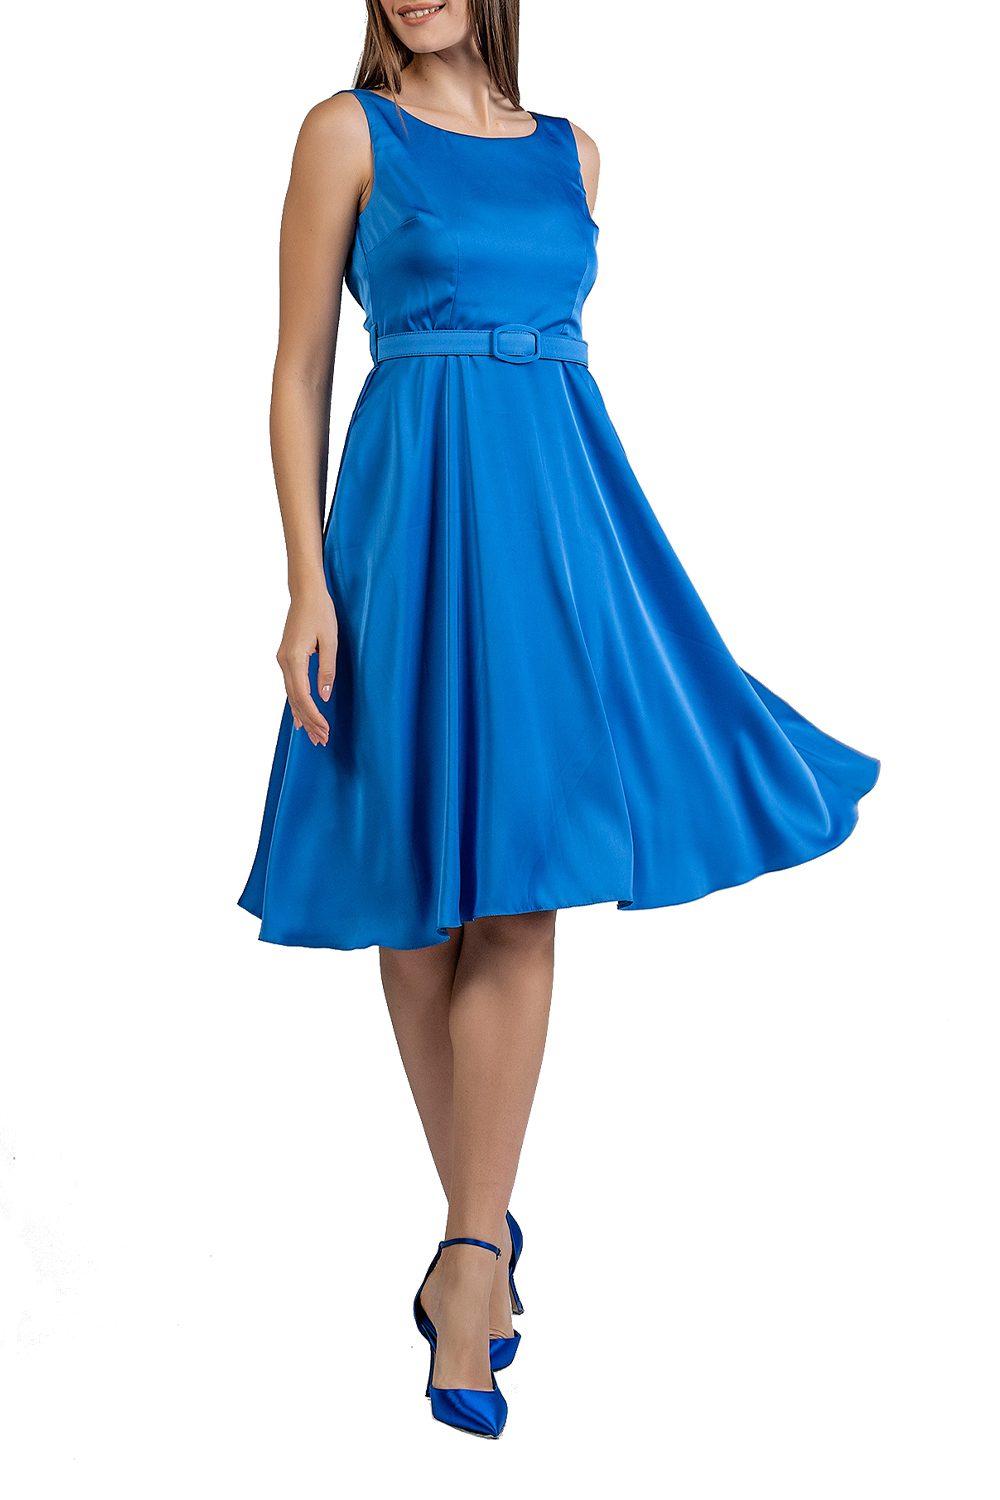 Γυναικείο Φόρεμα BELLINO 21.11.2883 Μπλε Ρουά